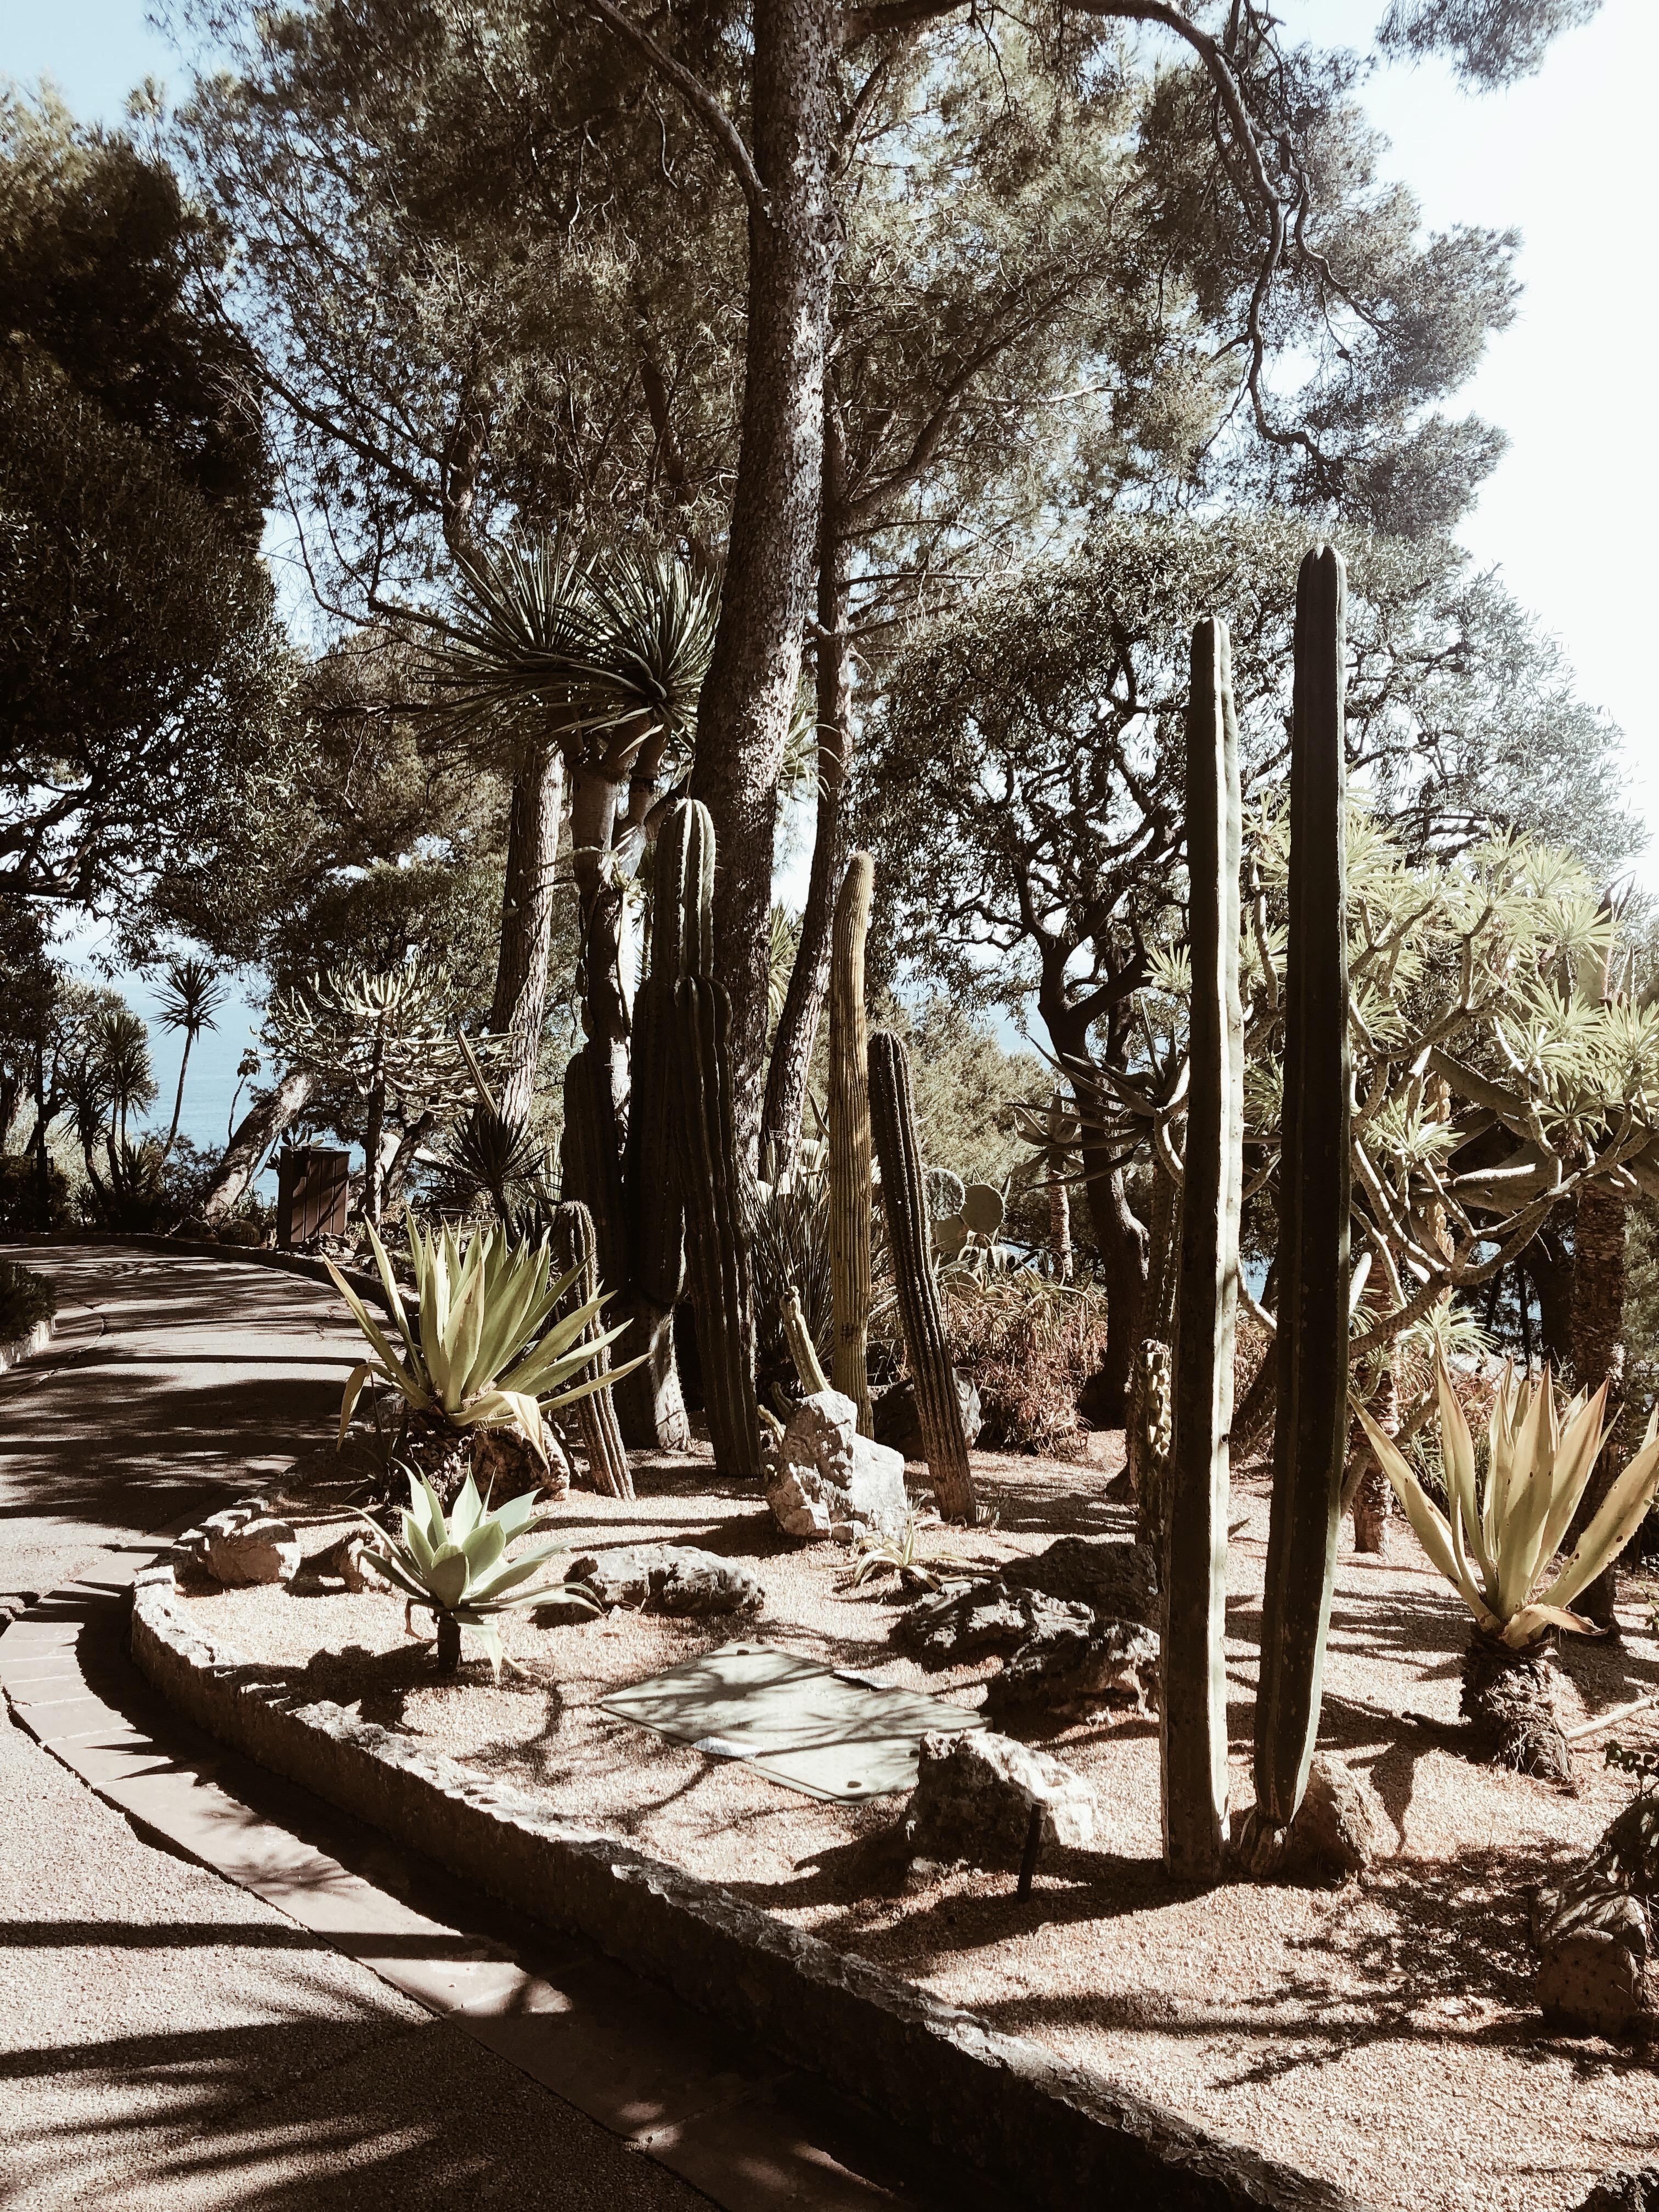 Côte d’Azur #monaco #cactusgarden #botanical
#plantlove #plantlady #couchstyle